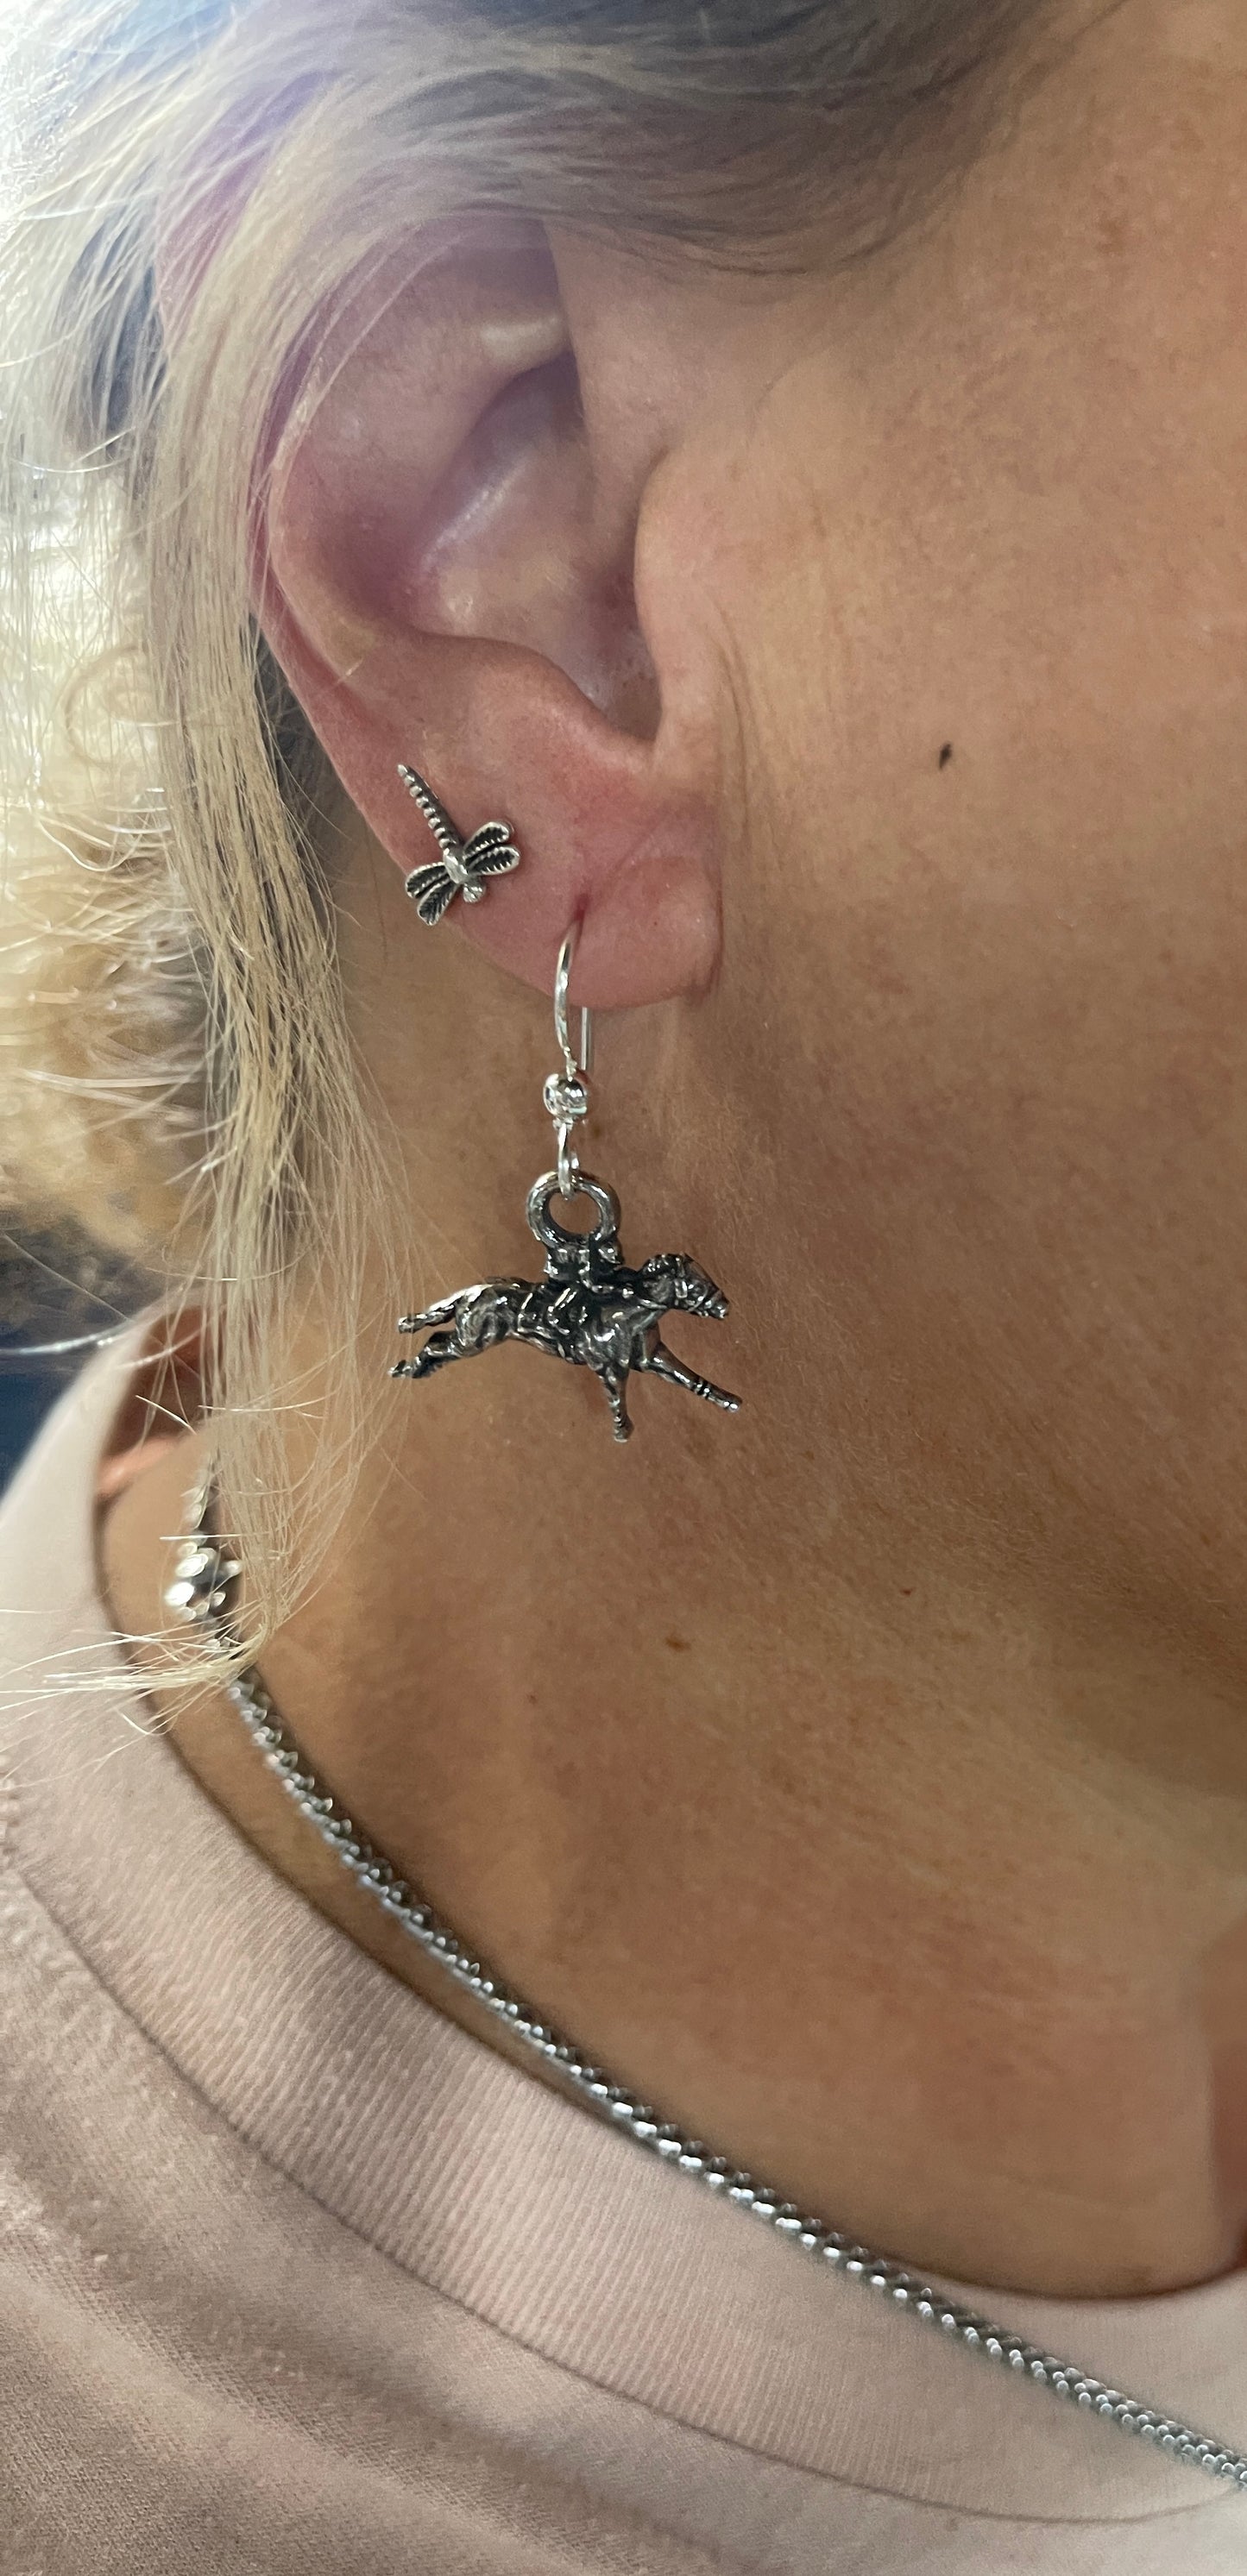 Racehorse earrings